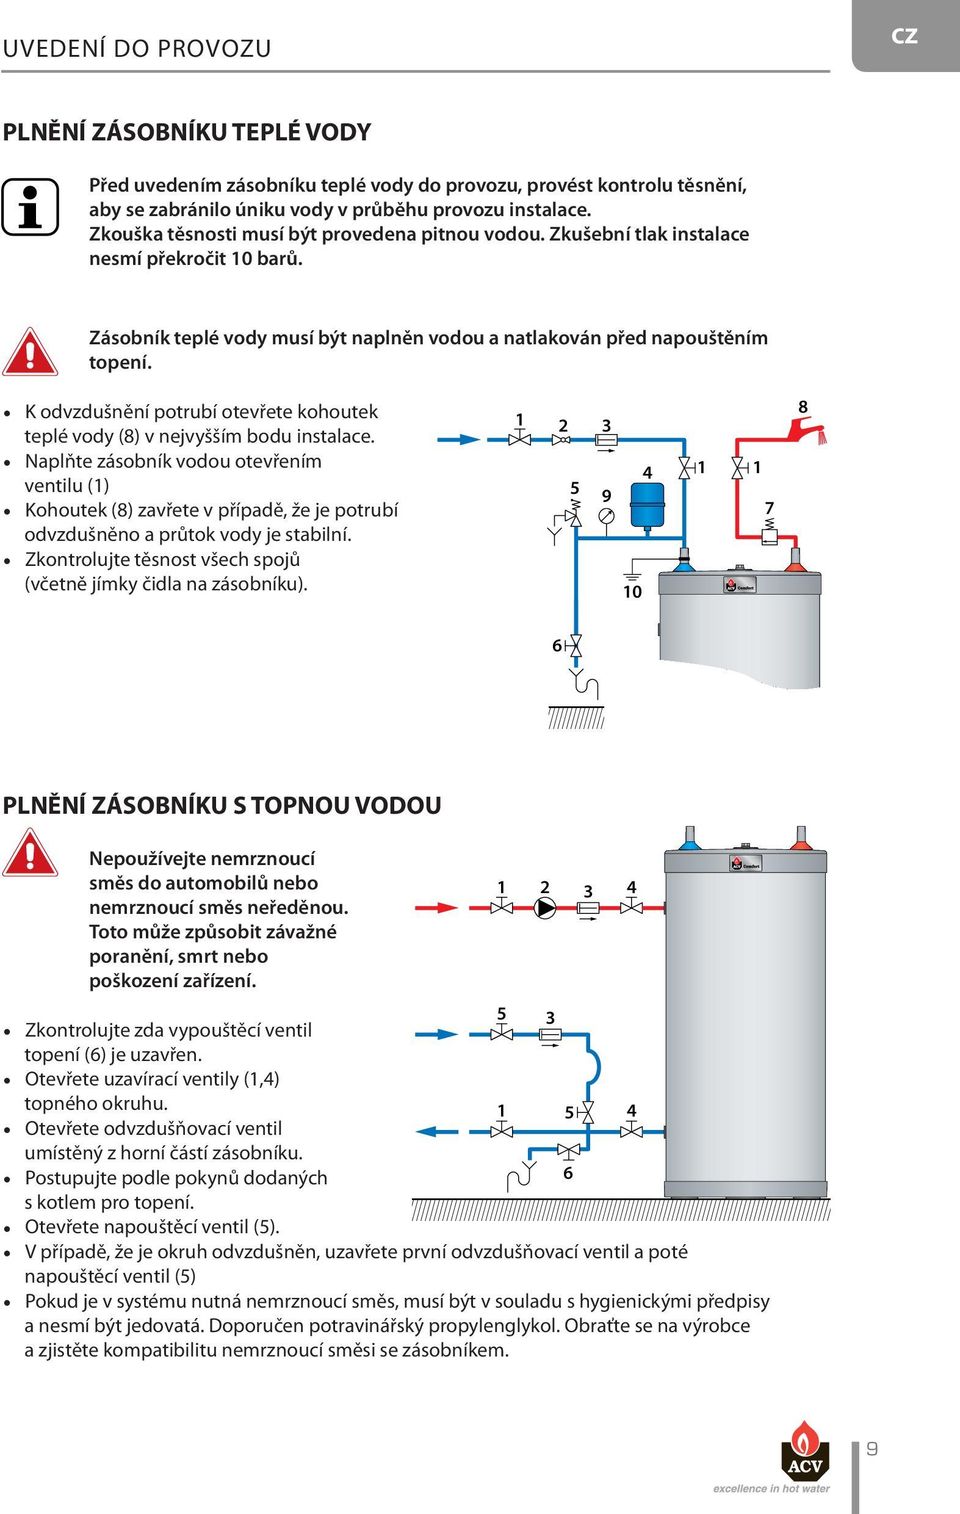 K odvzdušnění potrubí otevřete kohoutek teplé vody (8) v nejvyšším bodu instalace.